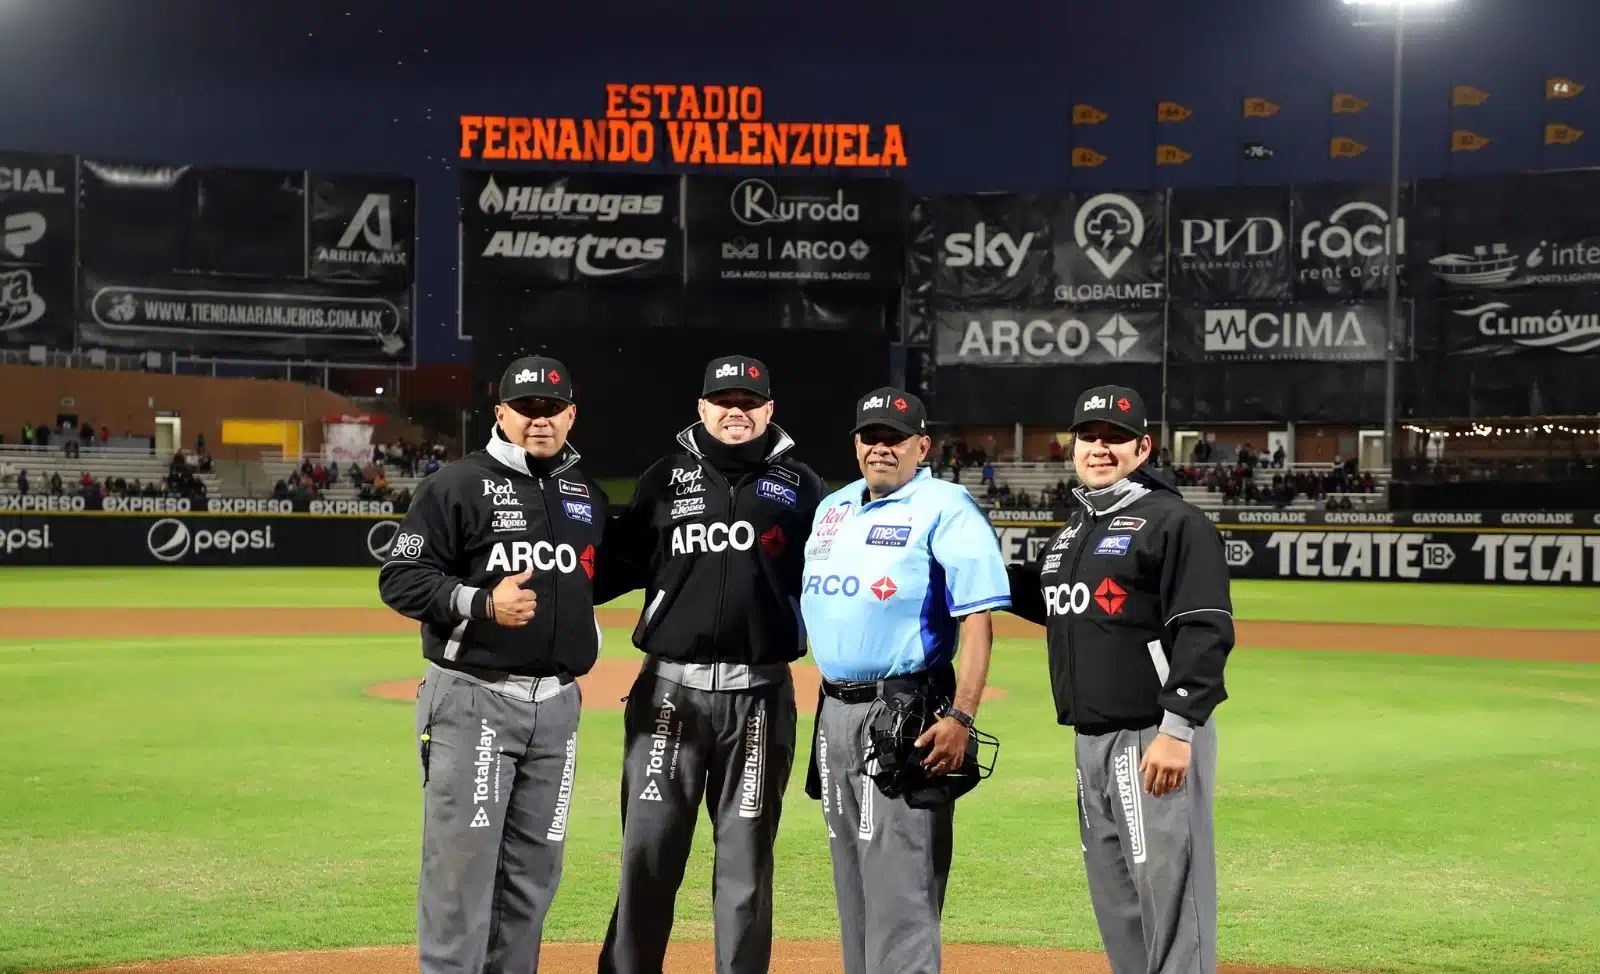 El culiacanense Michael Salazar es uno de los umpires convocados para la fiesta del Caribe